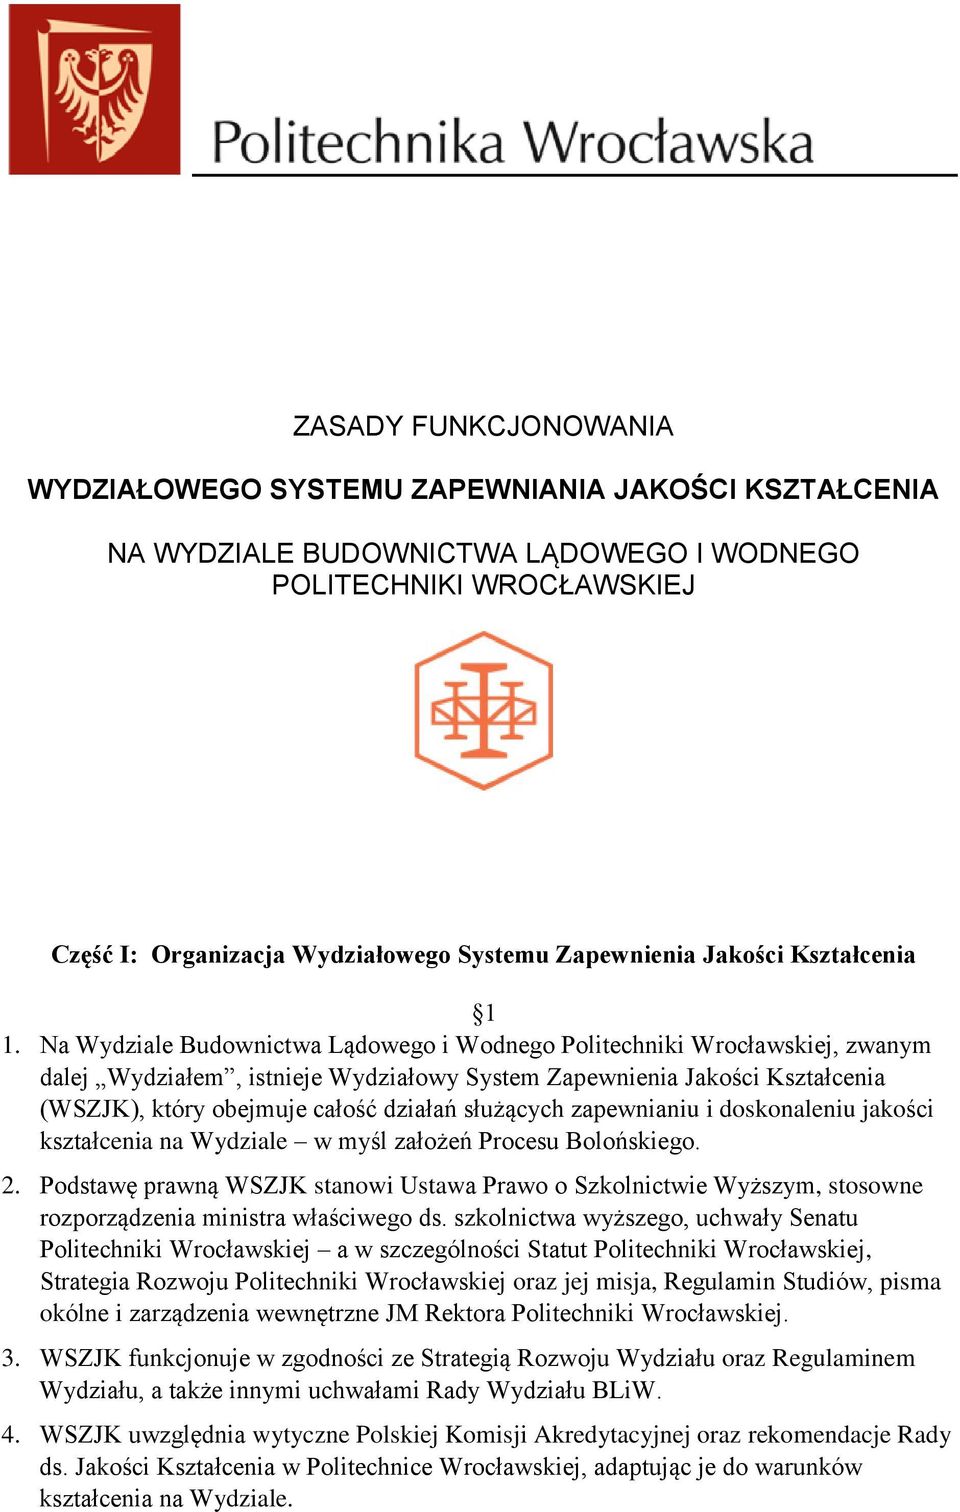 Na Wydziale Budownictwa Lądowego i Wodnego Politechniki Wrocławskiej, zwanym dalej Wydziałem, istnieje Wydziałowy System Zapewnienia Jakości Kształcenia (WSZJK), który obejmuje całość działań